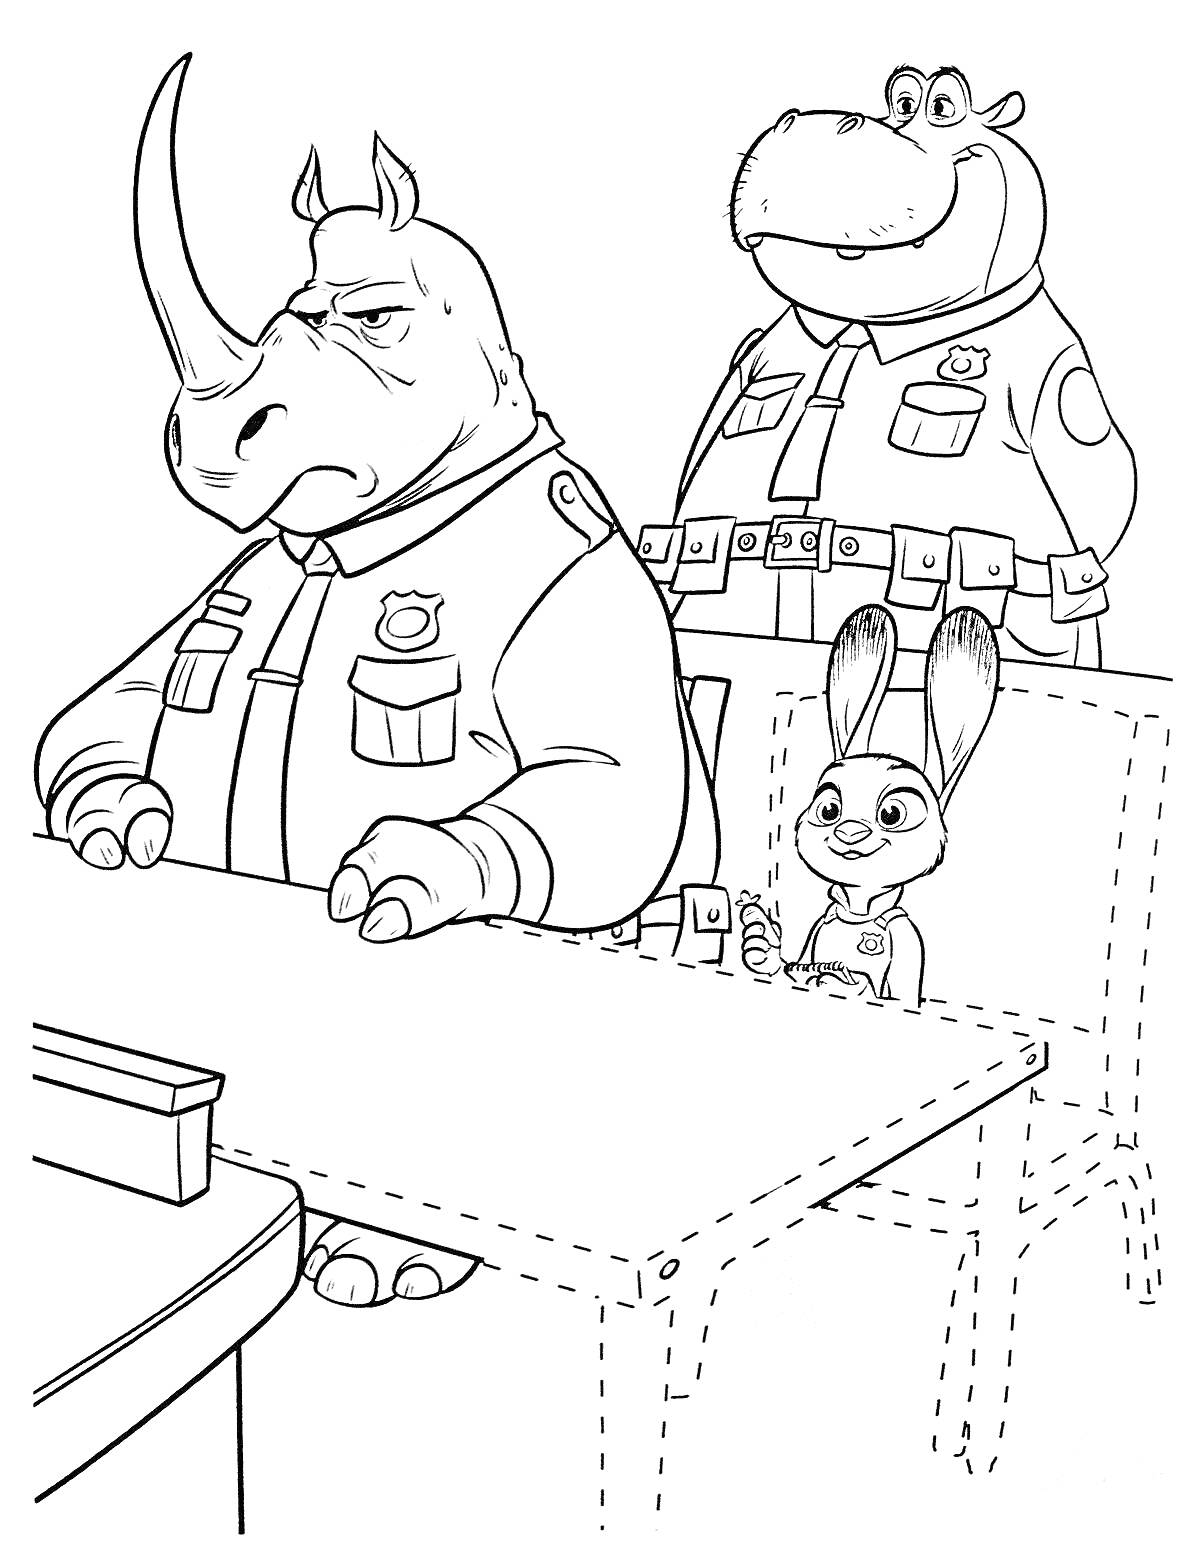 Джуди Хоппс в полицейском участке с носорогом и бегемотом